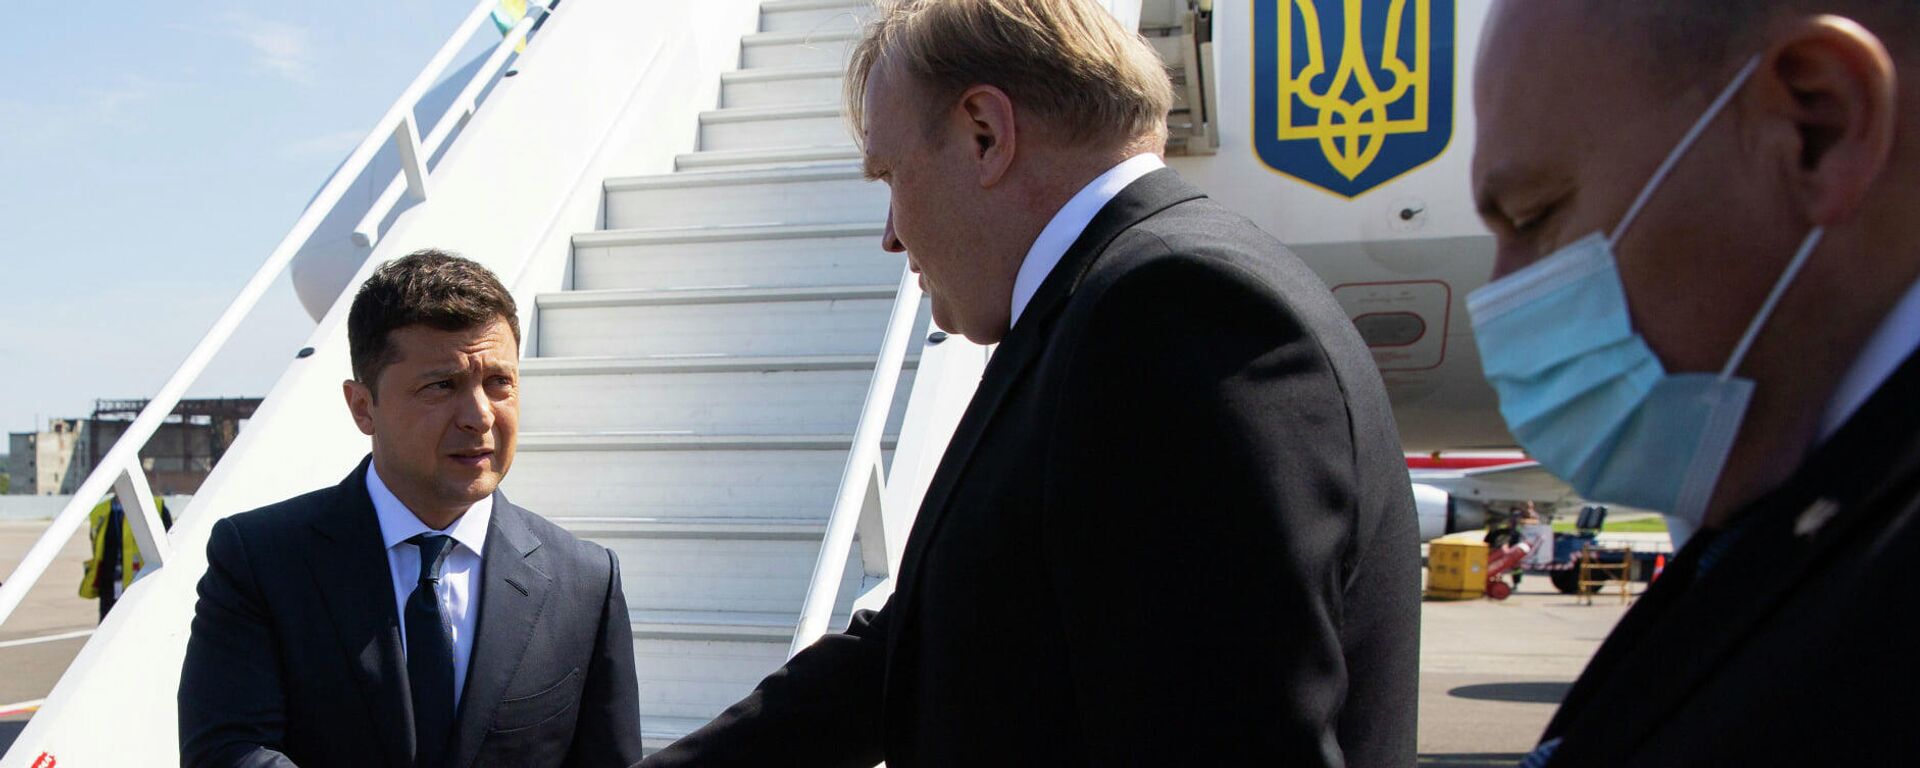 Президент Украины Владимир Зеленский прибыл в Кишинев на 30-летие независимости Молдовы - Sputnik Молдова, 1920, 27.08.2021